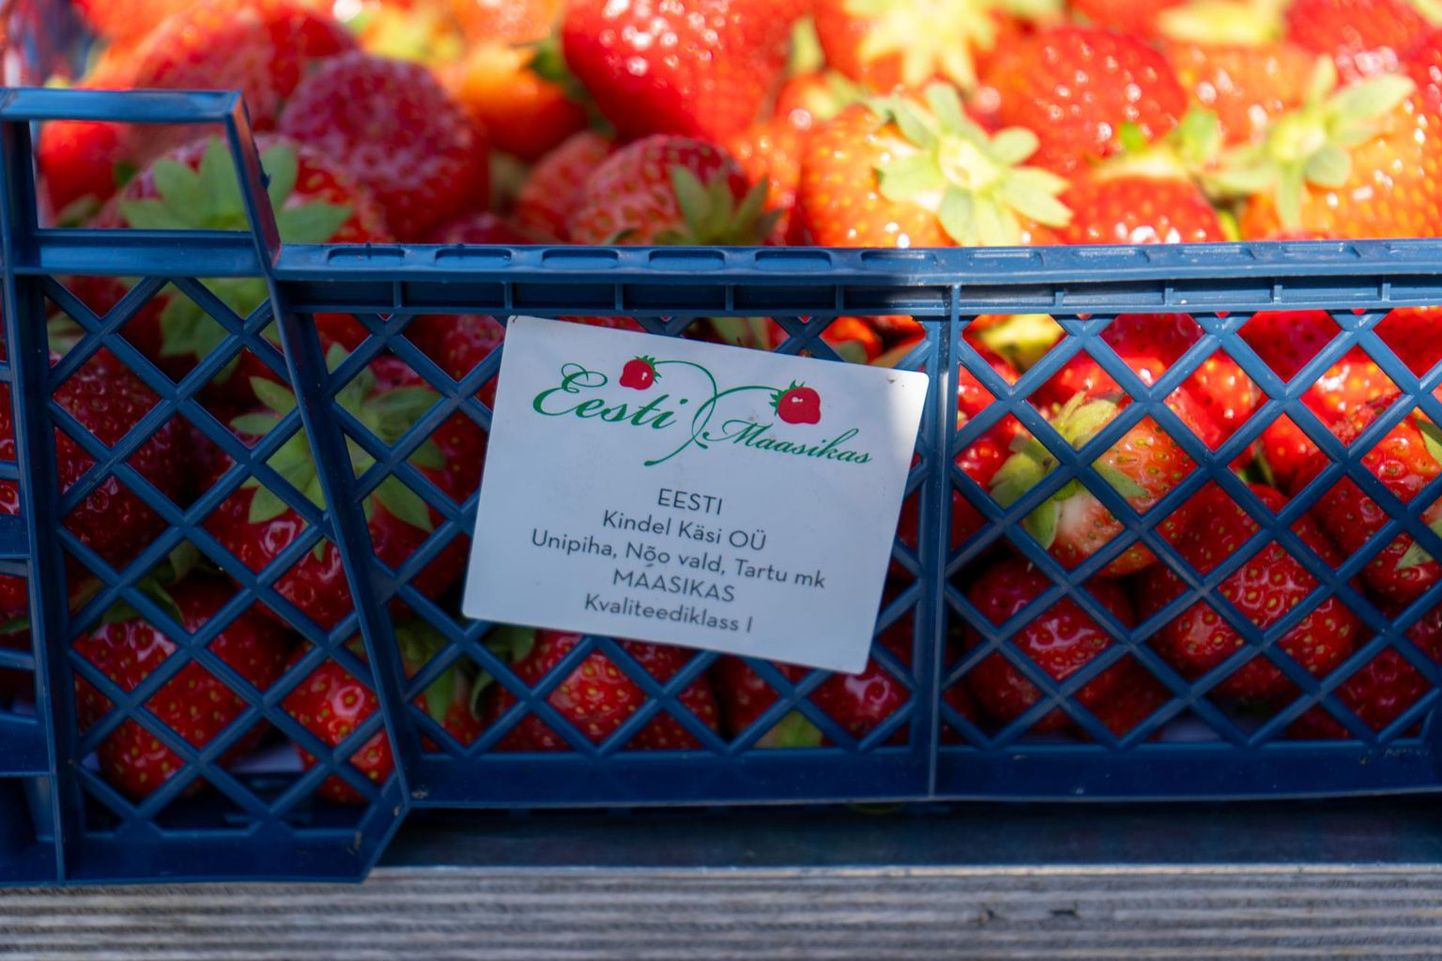 На Вильяндиском рынке продавалсь клубника, якобы произведенная компанией Kindel Käsi. В действительности компания не имела к этим ягодам отношения.